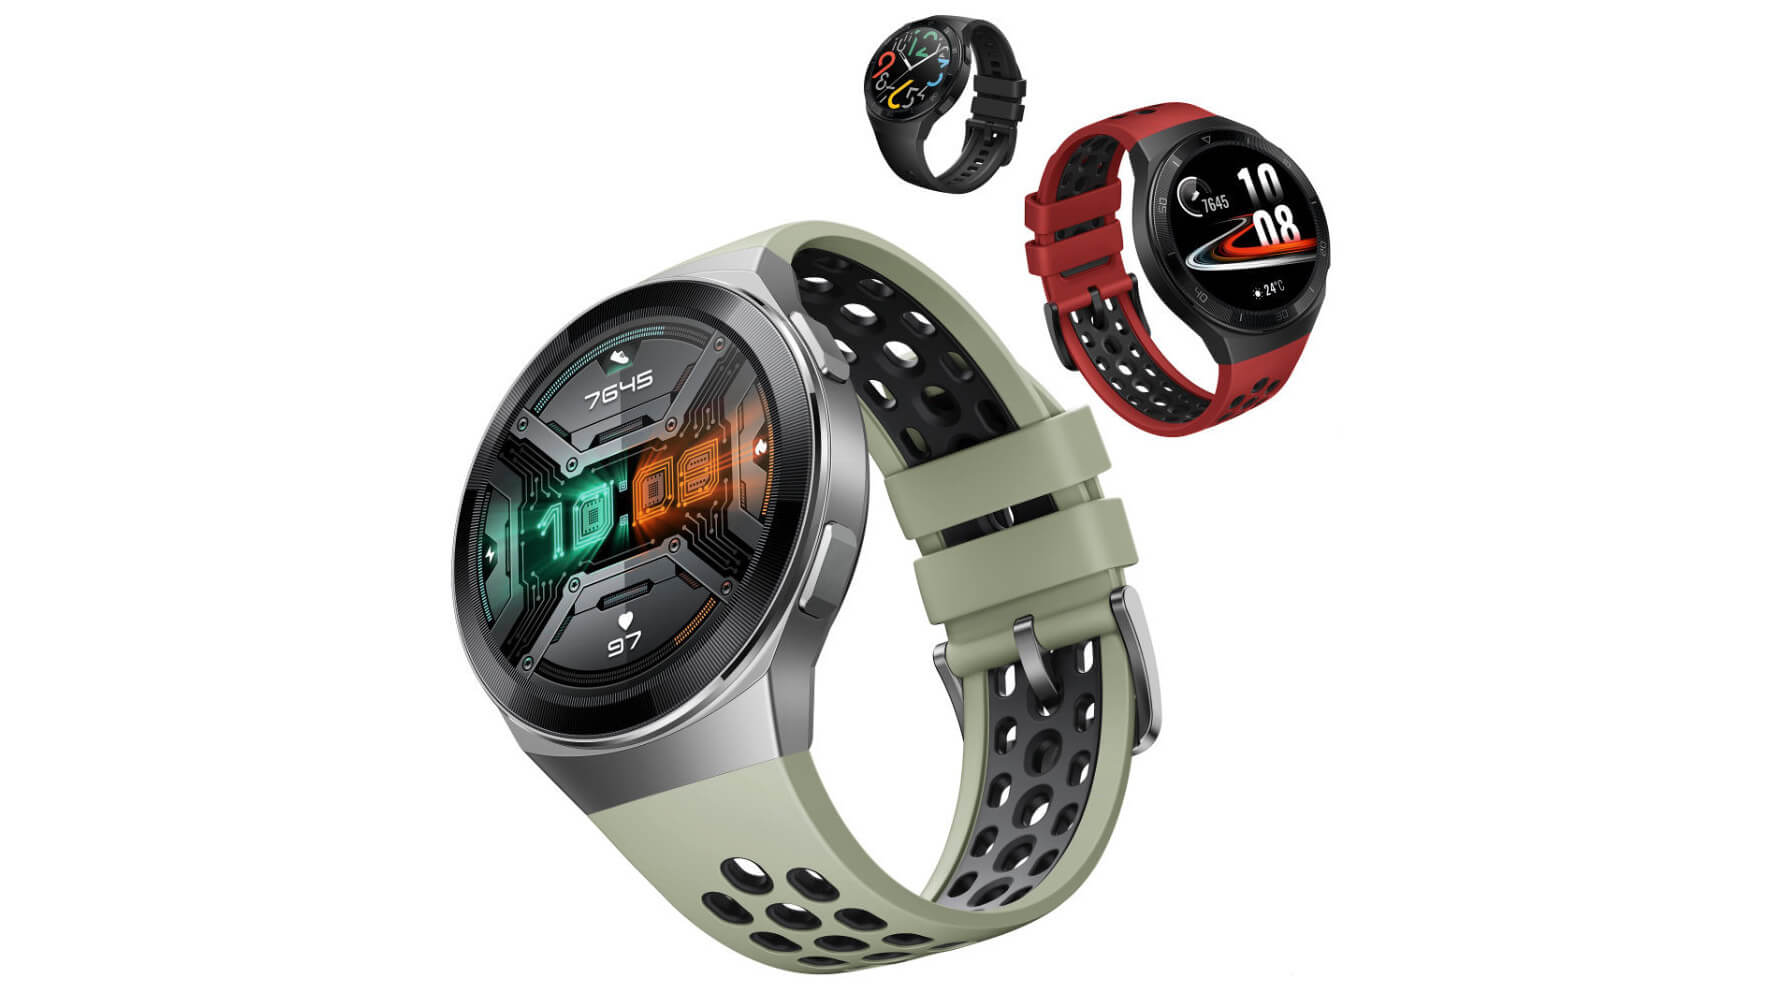 Смарт-часы Huawei Watch GT 2e вышли в России по цене 11 990 рублей